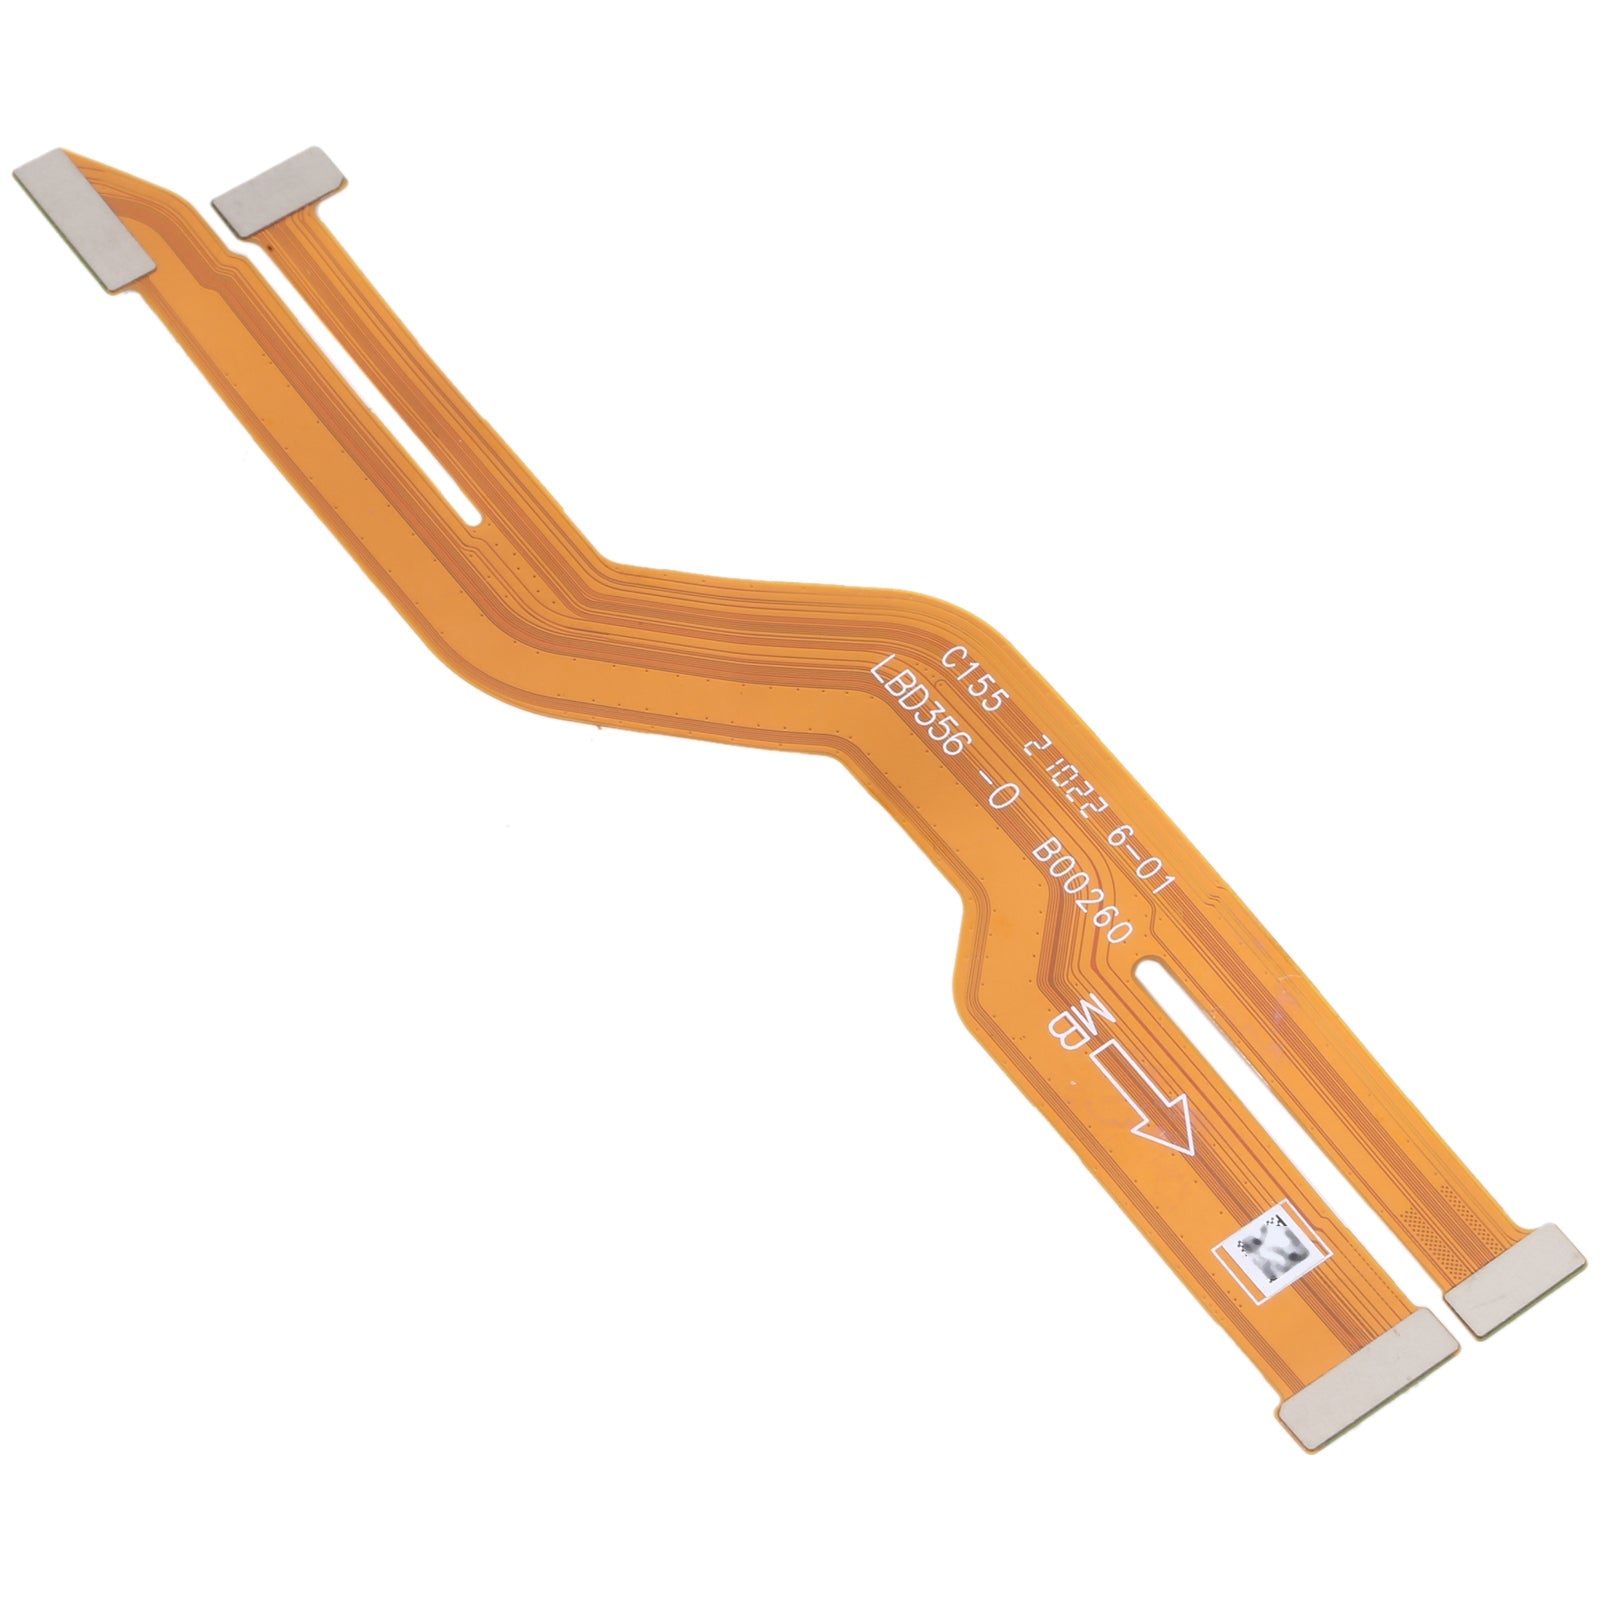 Oppo Reno5 Pro Board Connector Flex Cable